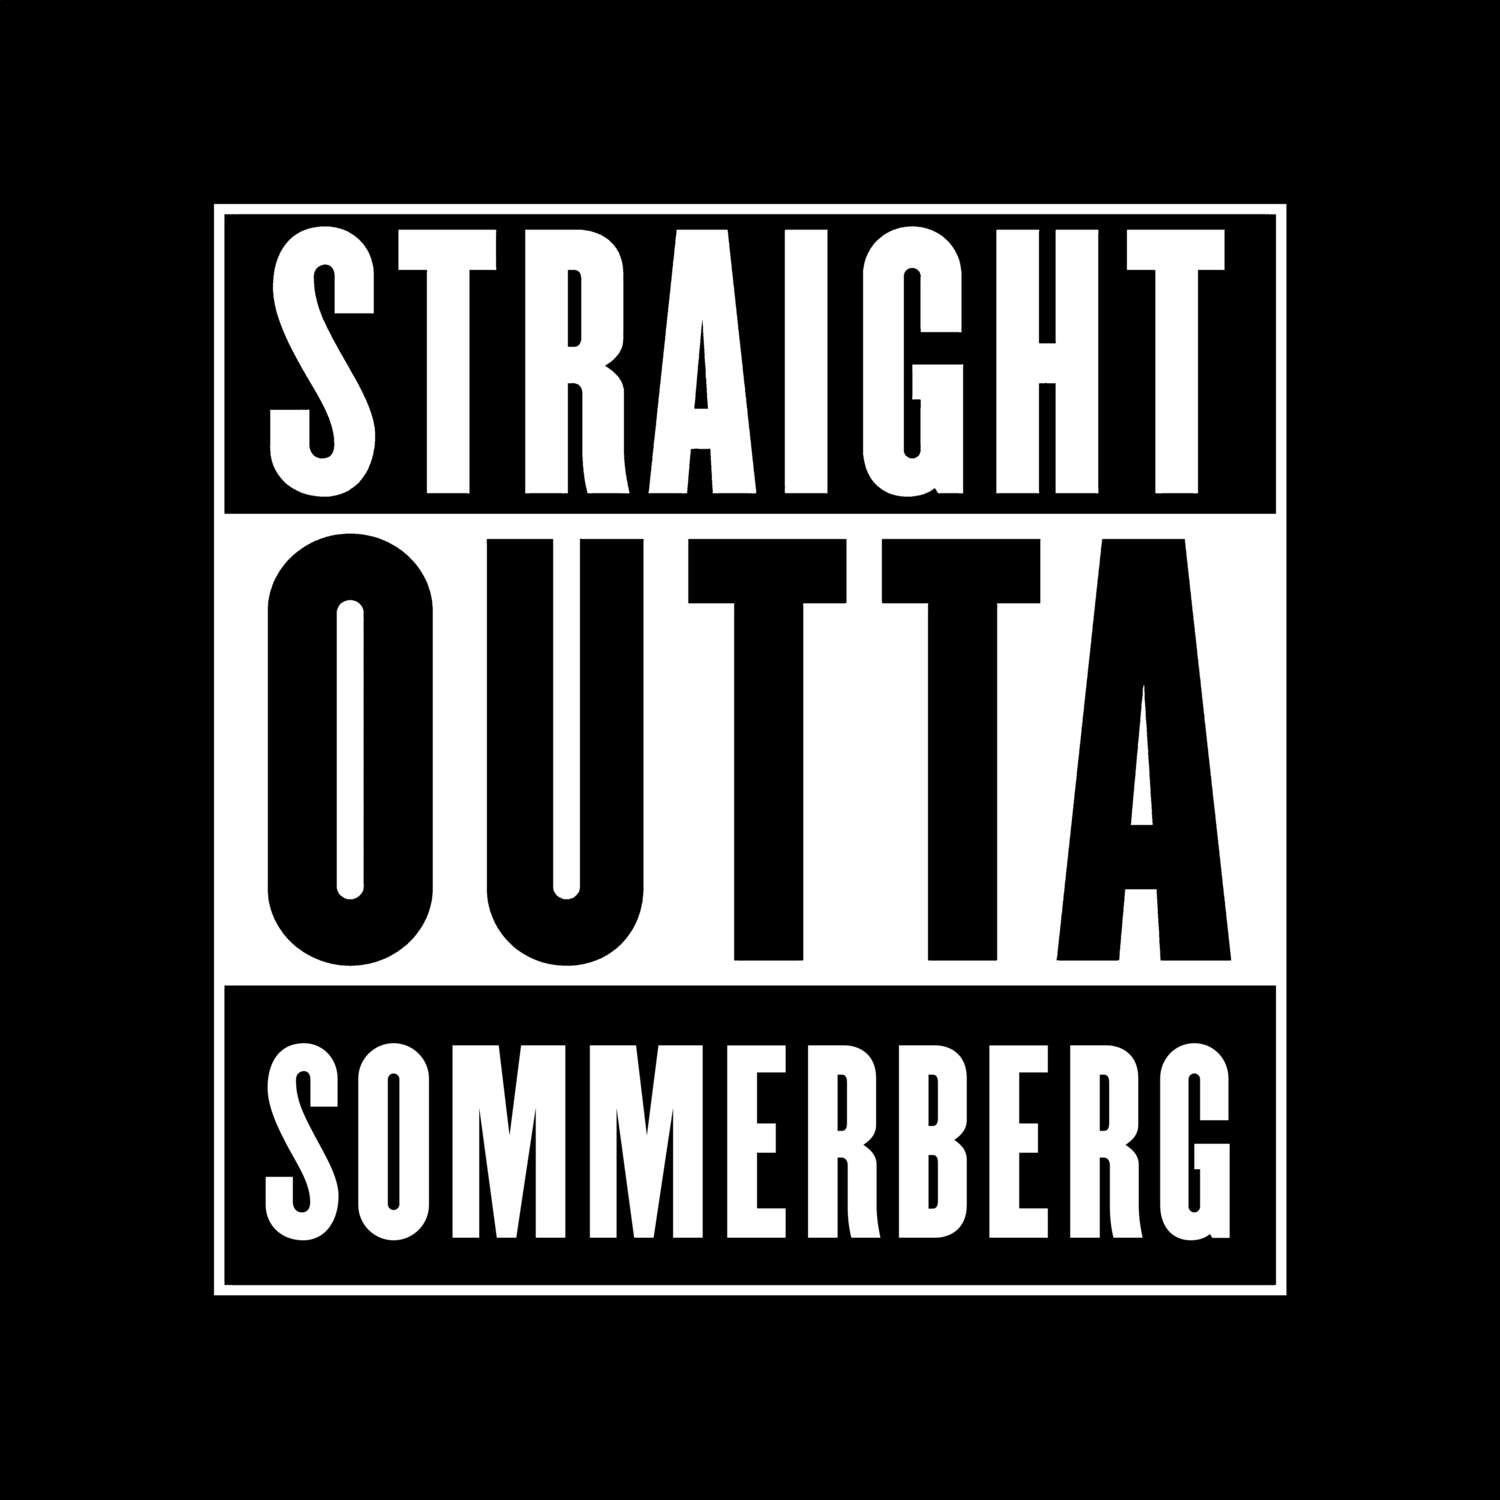 Sommerberg T-Shirt »Straight Outta«